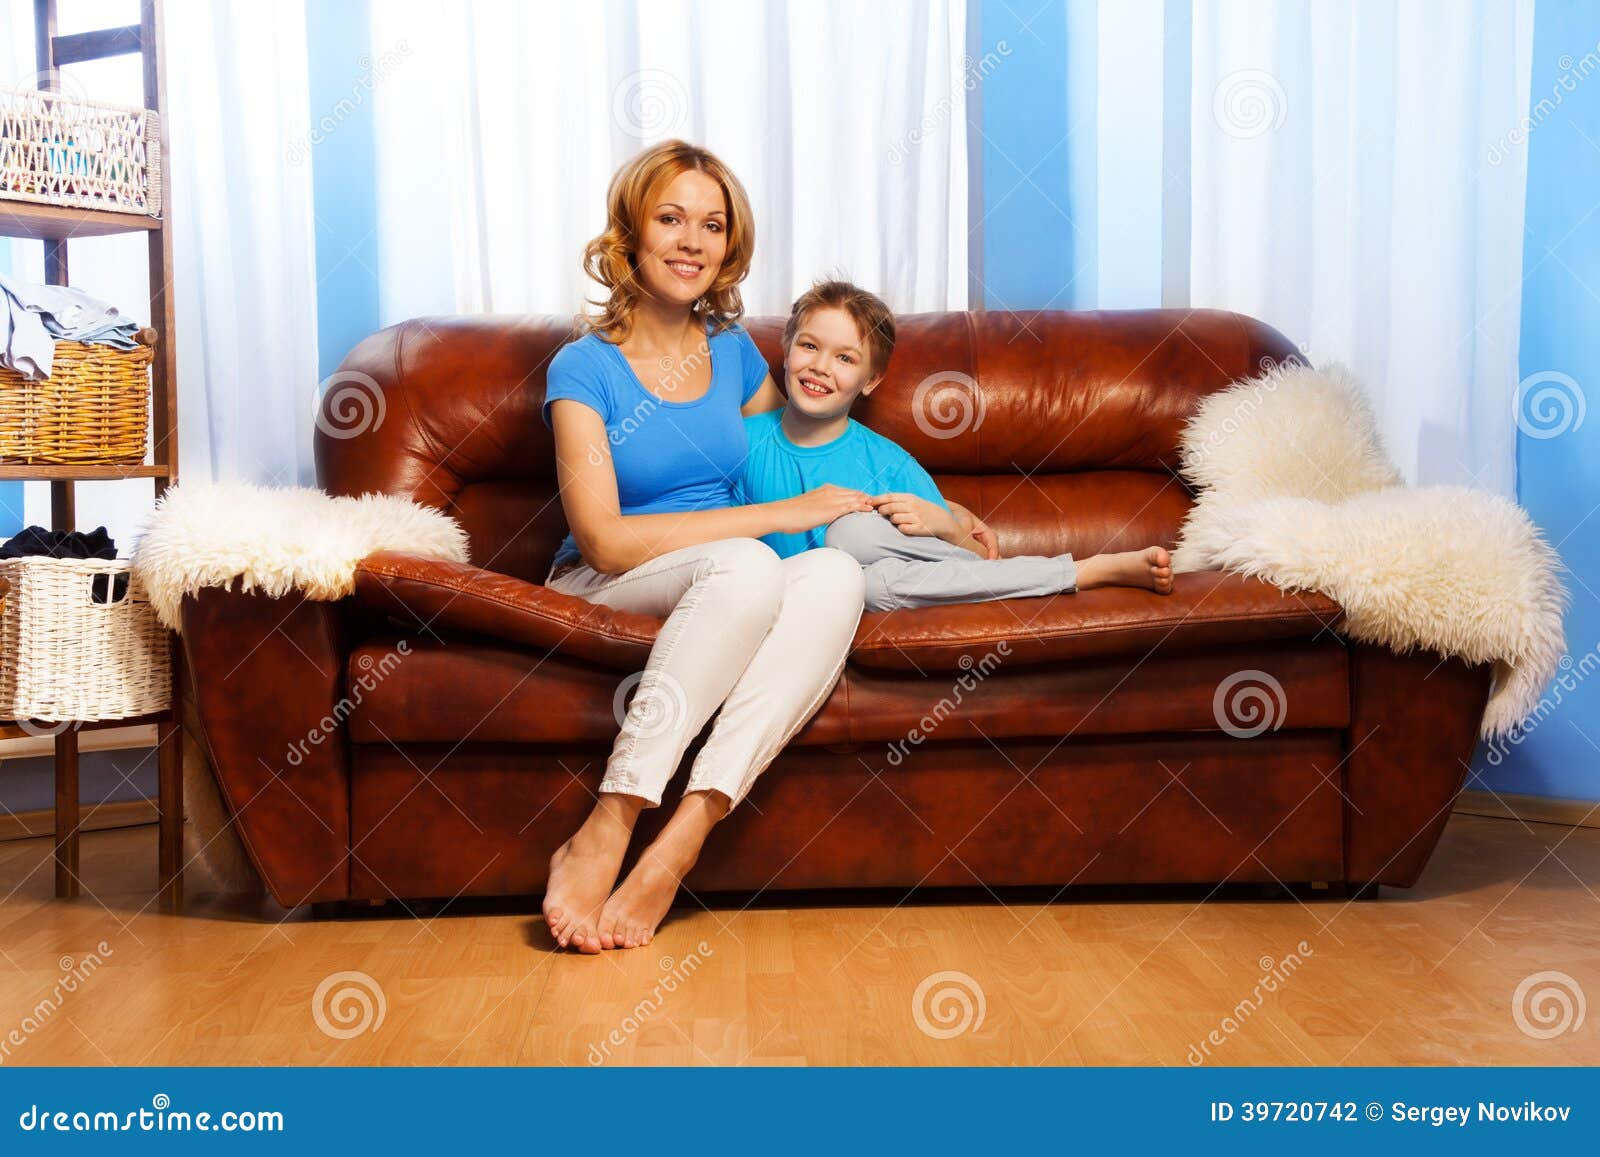 Мамаши на диване. Мама с ребенком на диване. Мать сидит с сыном на диване. Фотосессия ребенка и мамы на диване. Мама босиком на диване.